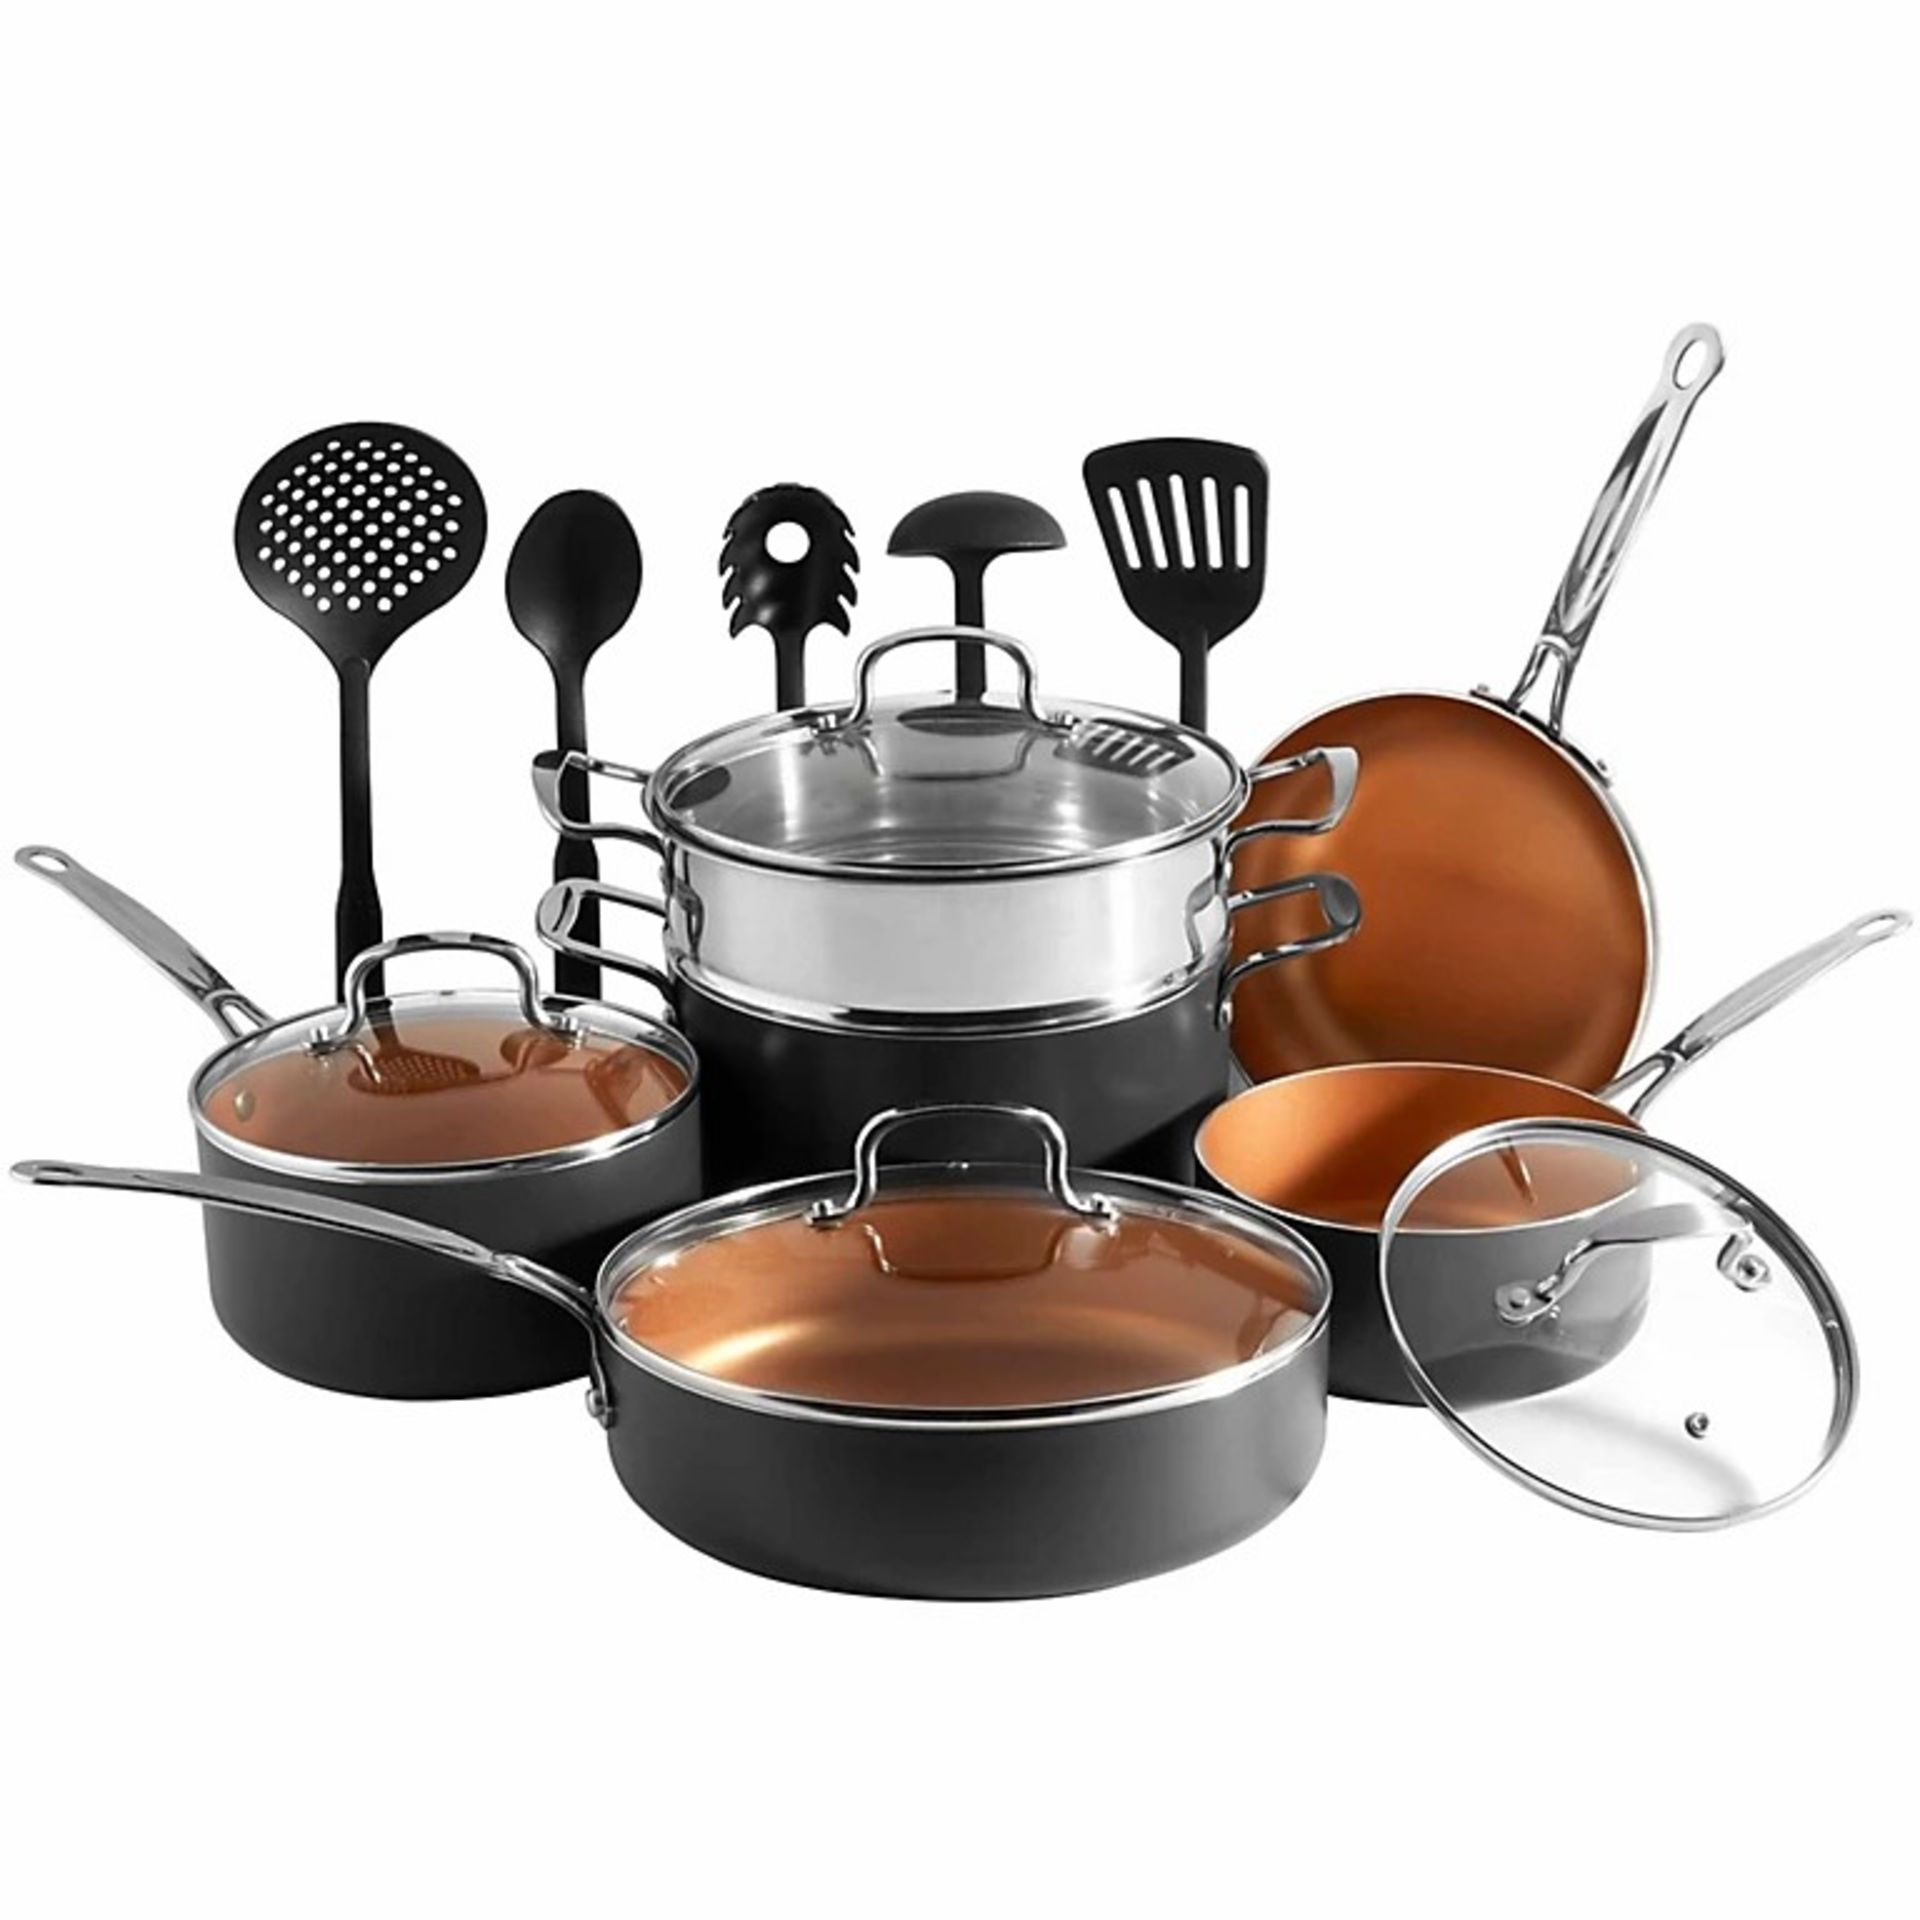 Pots & Pans Set, 11Pc Induction Safe, Non-Stick Saucepan & Frying Pans with Kitchen Utensils - ER37